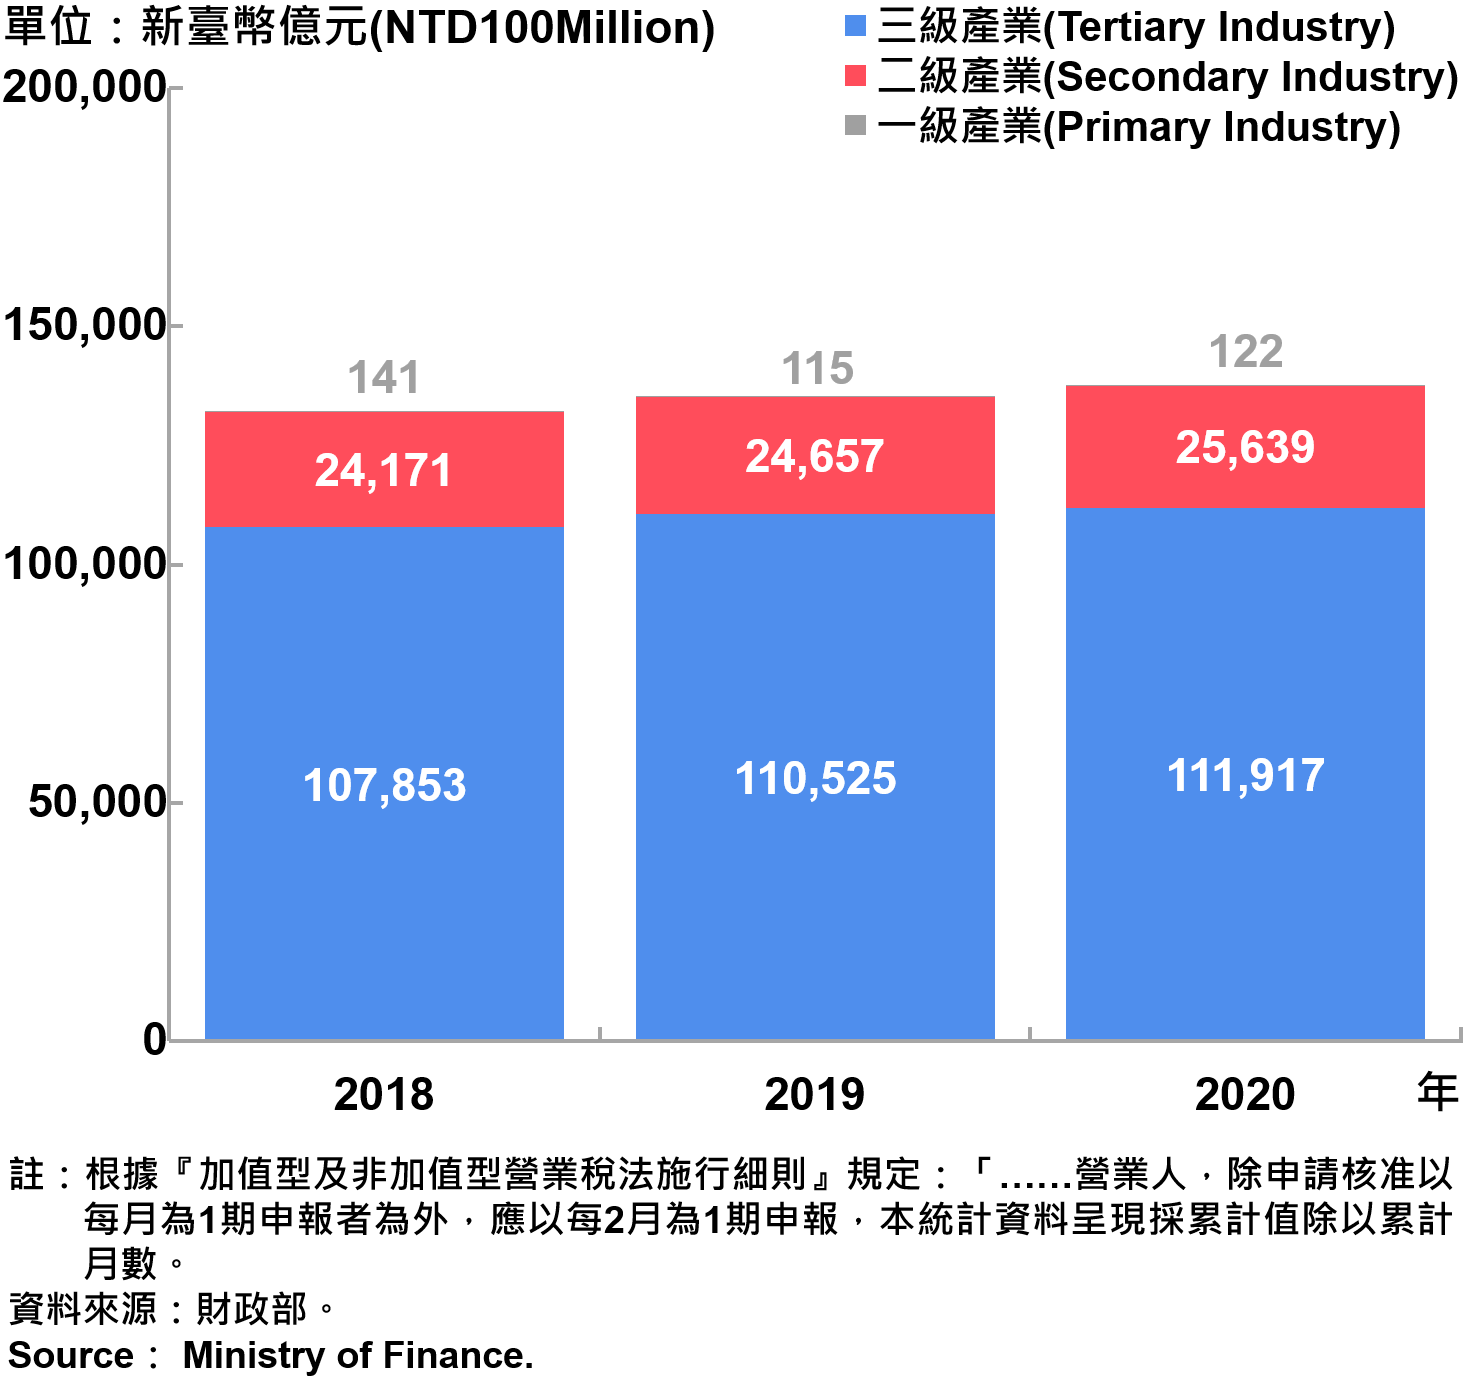 臺北市一二三級產業銷售額—2020 Sales of Primary , Secondary and Tertiary Industry in Taipei City—2020